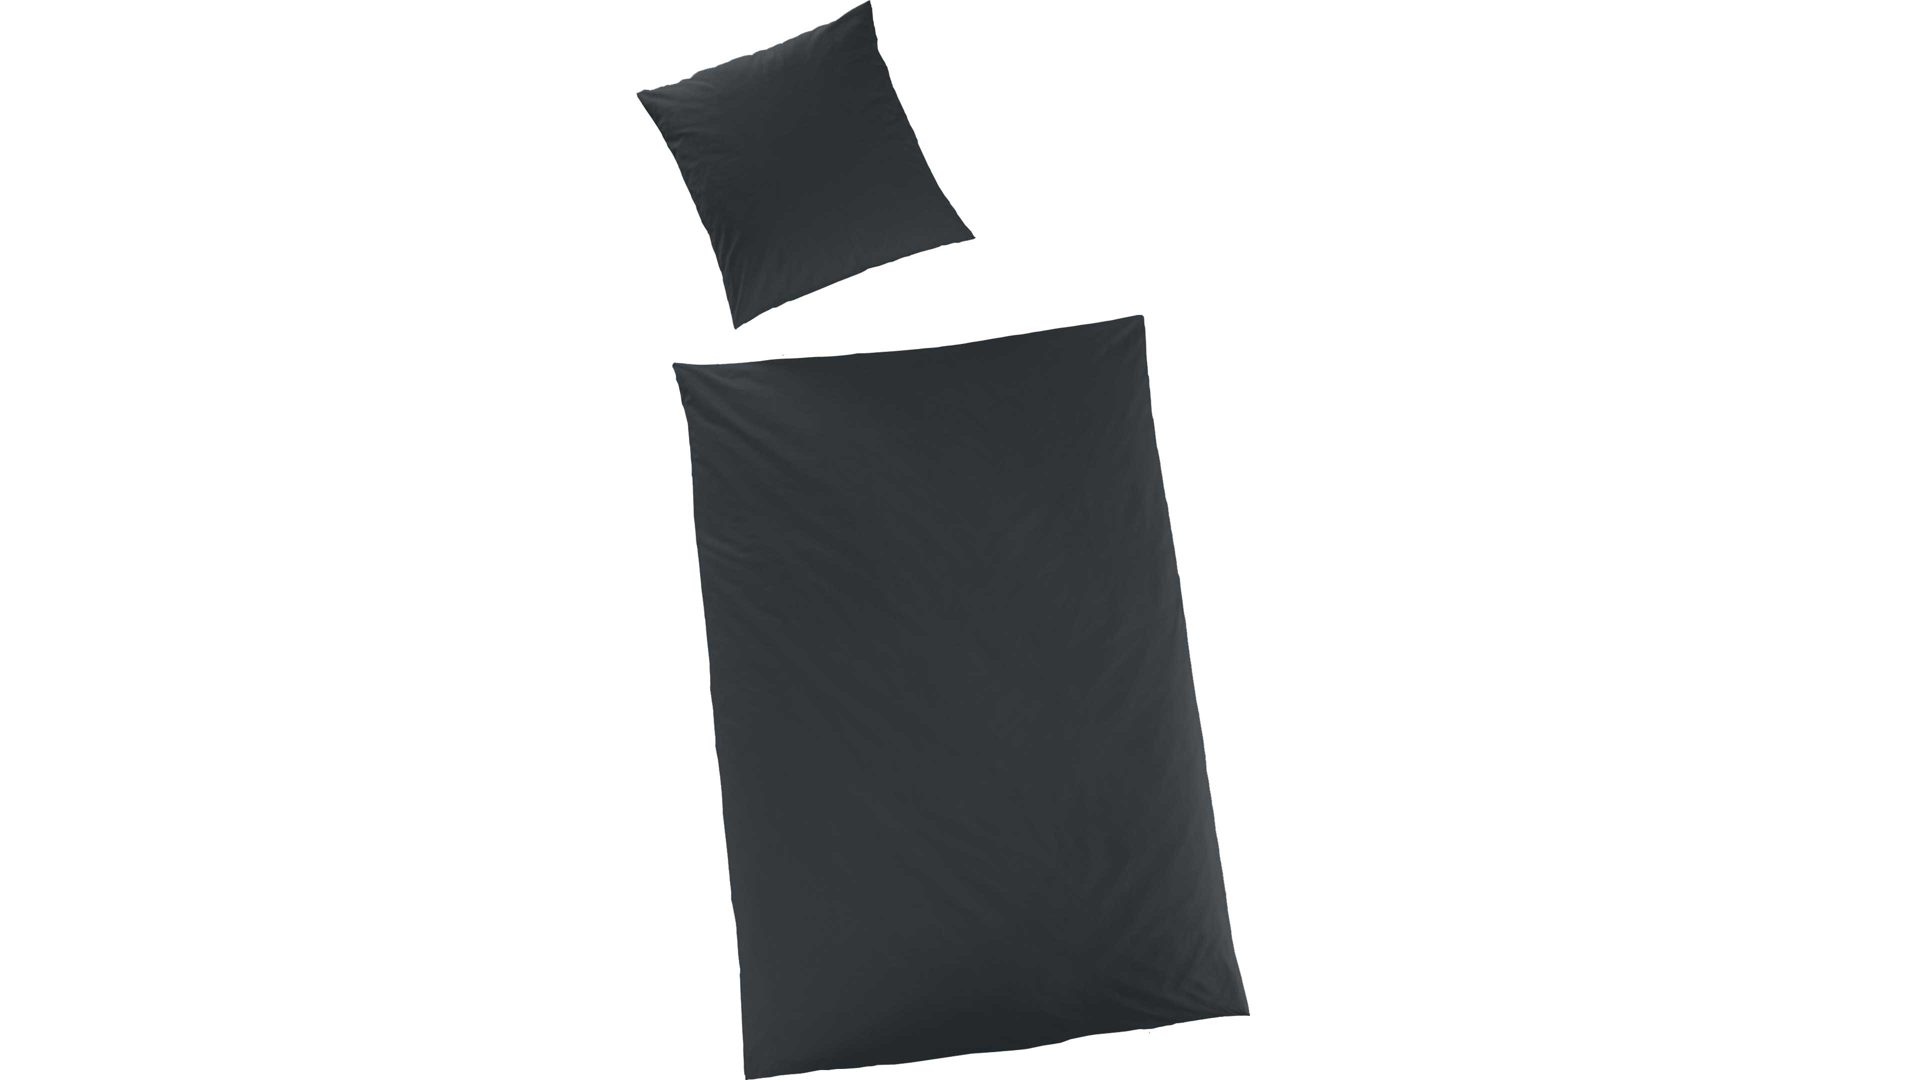 Bettwäsche-Set H.g. hahn haustextilien aus Stoff in Schwarz HAHN Luxus-Satin-Bettwäsche Sempre - Heimtextilien schwarzer Baumwollsatin - zweiteilig, ca. 135 x 200 cm